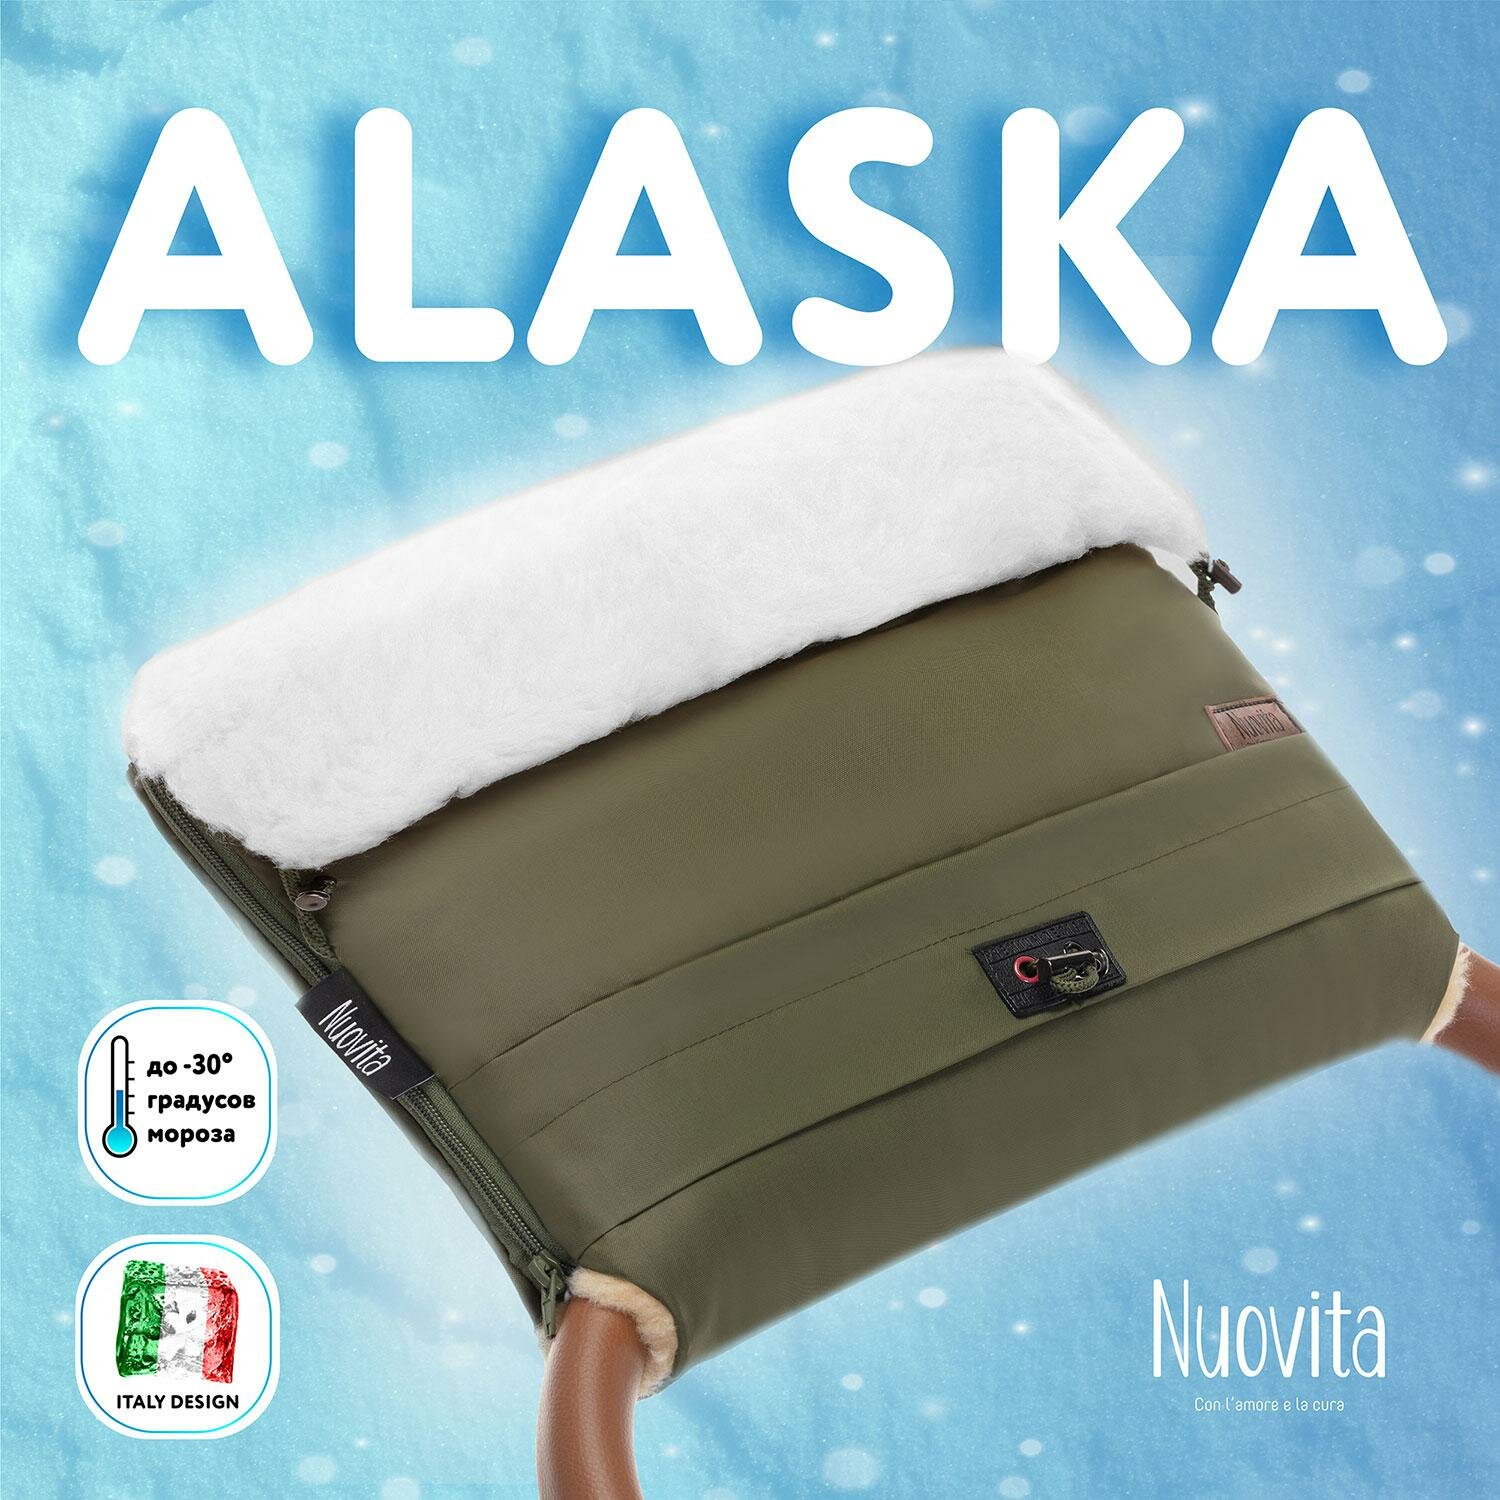 Муфта меховая для коляски Nuovita Alaska Bianco (цвета в ассорт.) - фото №14